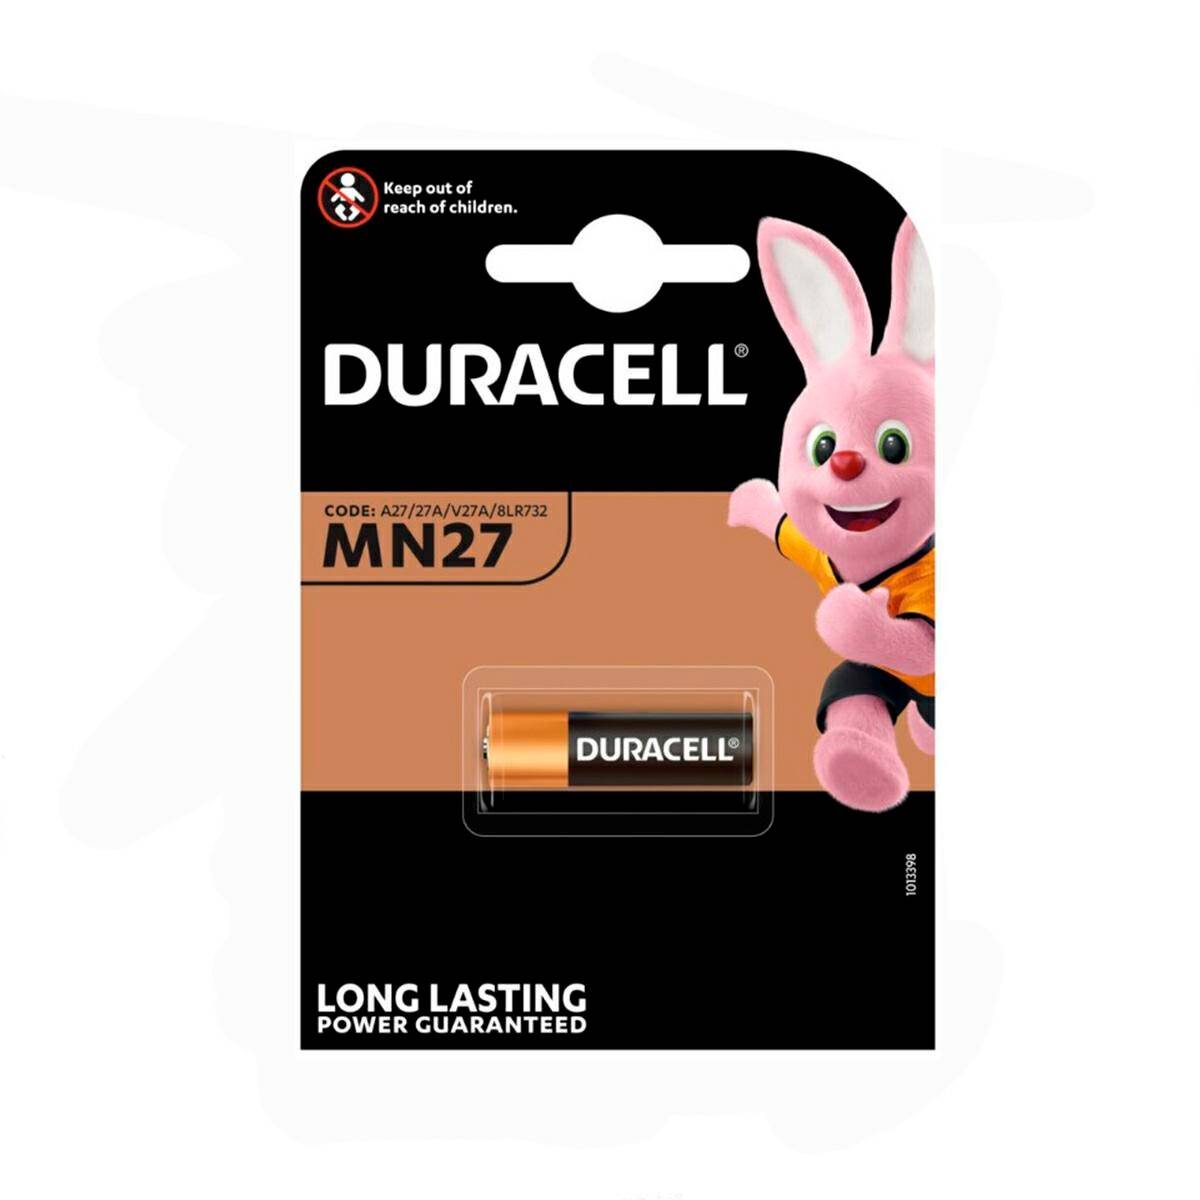 Batterie Duracell MN27 8LR732 12V 1 stck